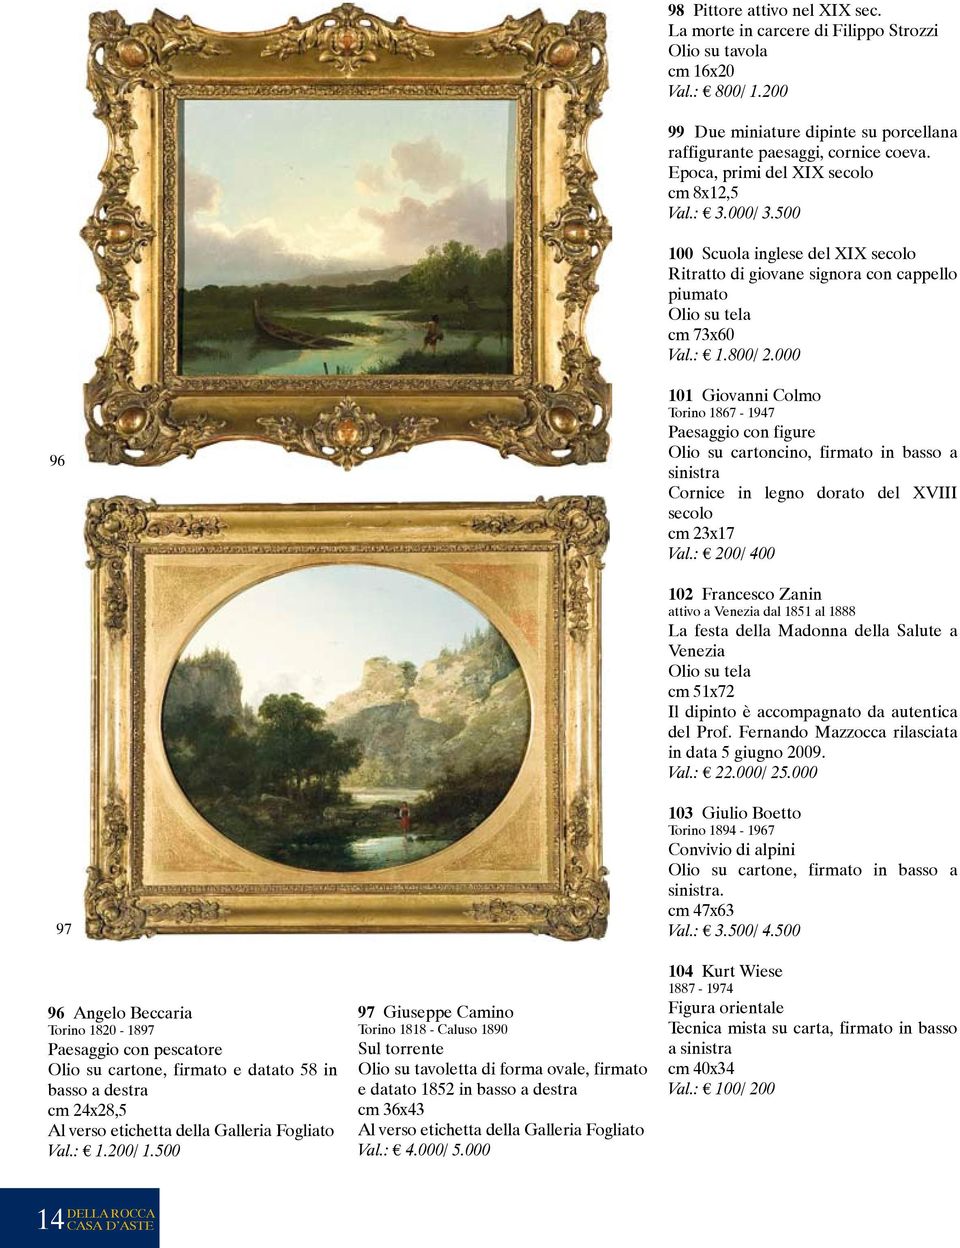 000 96 101 Giovanni Colmo Torino 1867-1947 Paesaggio con figure Olio su cartoncino, firmato in basso a sinistra Cornice in legno dorato del XVIII secolo cm 23x17 Val.